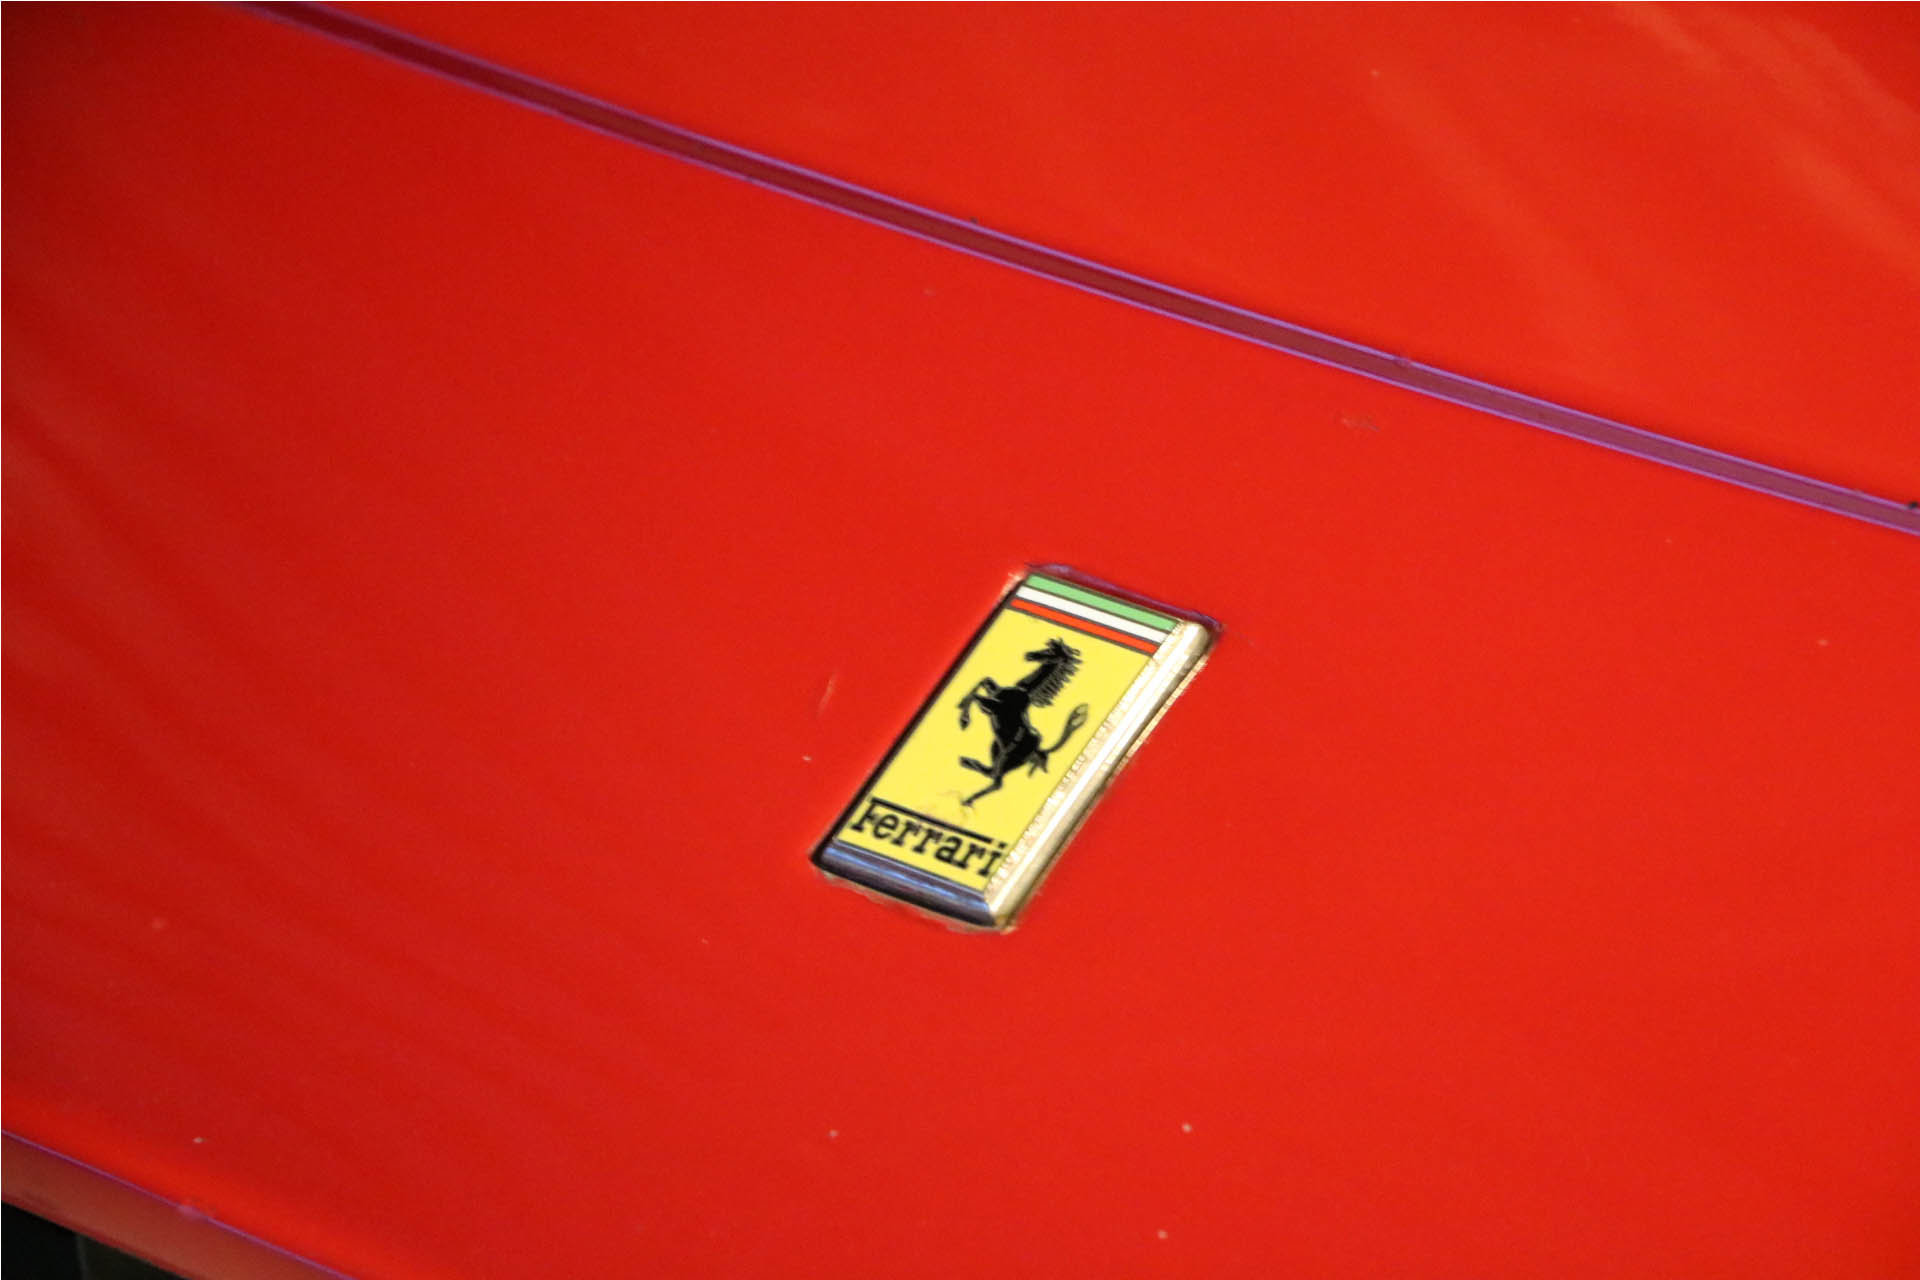 1971 Ferrari GTB4